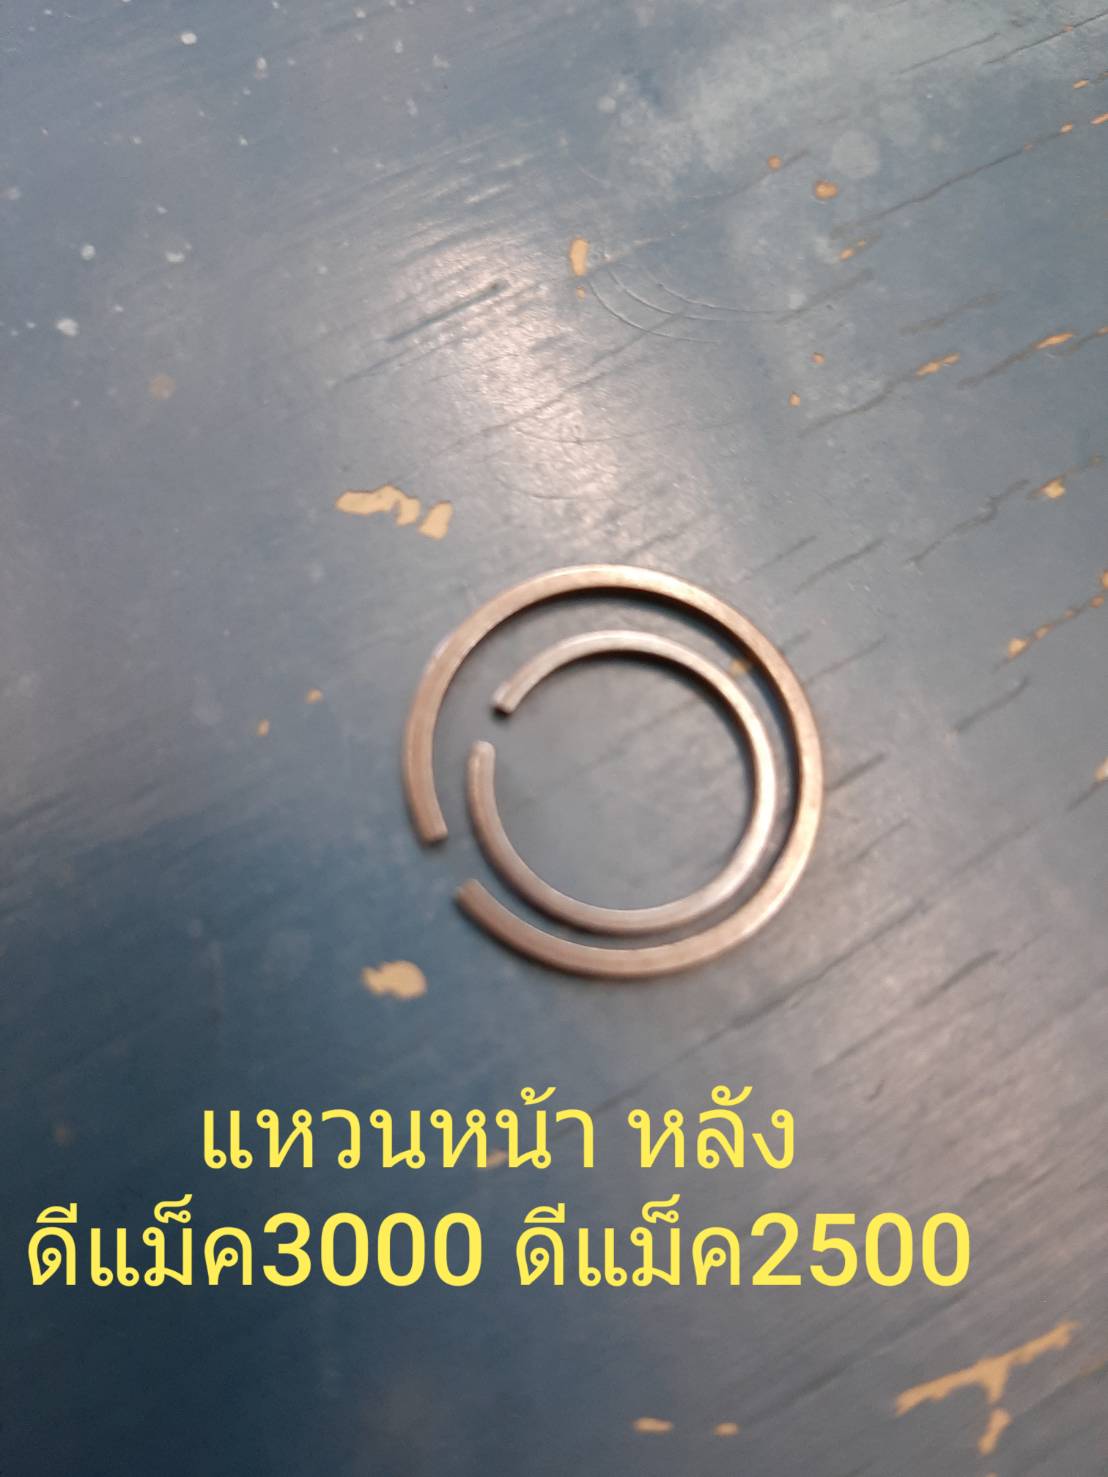 แหวนหน้าและหลัง แหวนหน้าหลัง สำหรับซ่อมเทอร์โบ ของ ดีแม็ค3000 2500 (แก้ปัญหาน้ำมันไหล รั่วหน้าและหลัง)